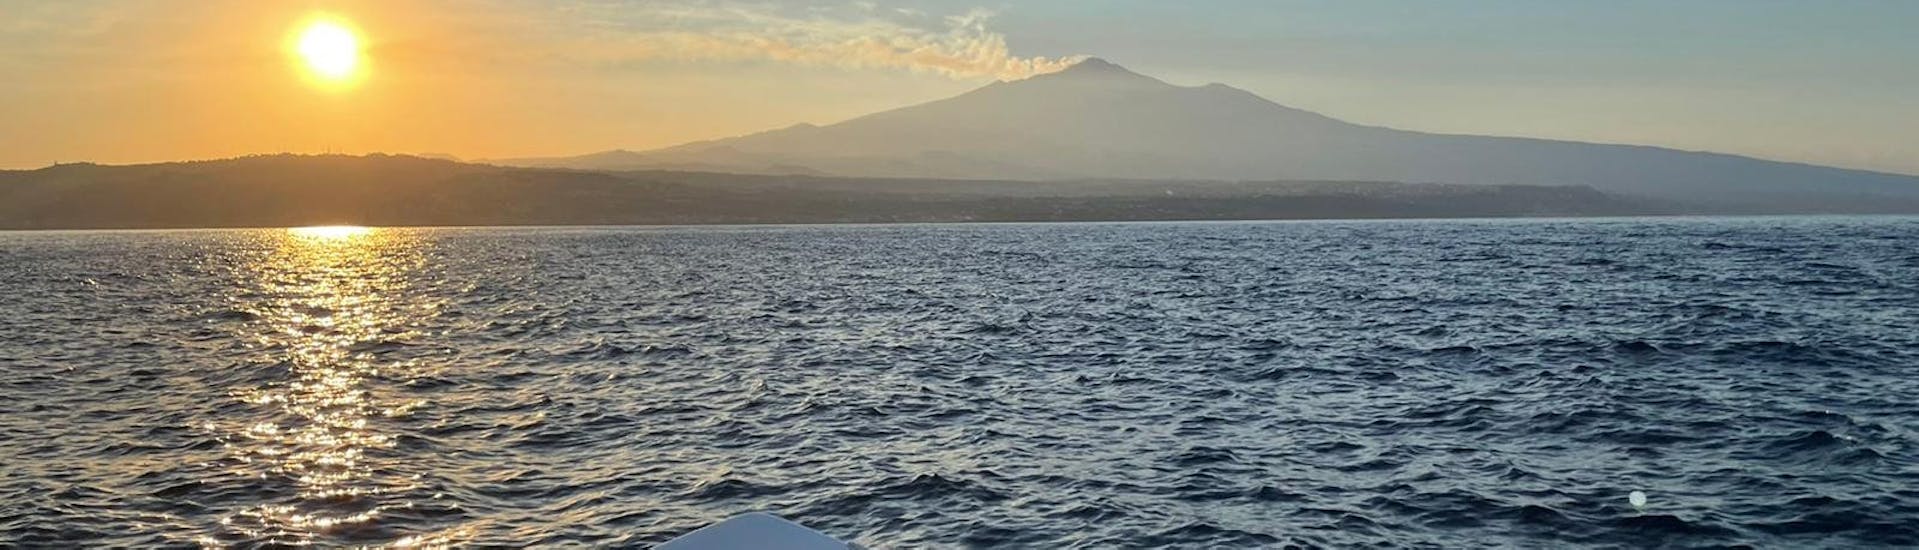 La puesta de sol sobre el Etna vista desde el barco de Navigando per Trezza durante la excursión en barco desde Aci Trezza con Apéritif.